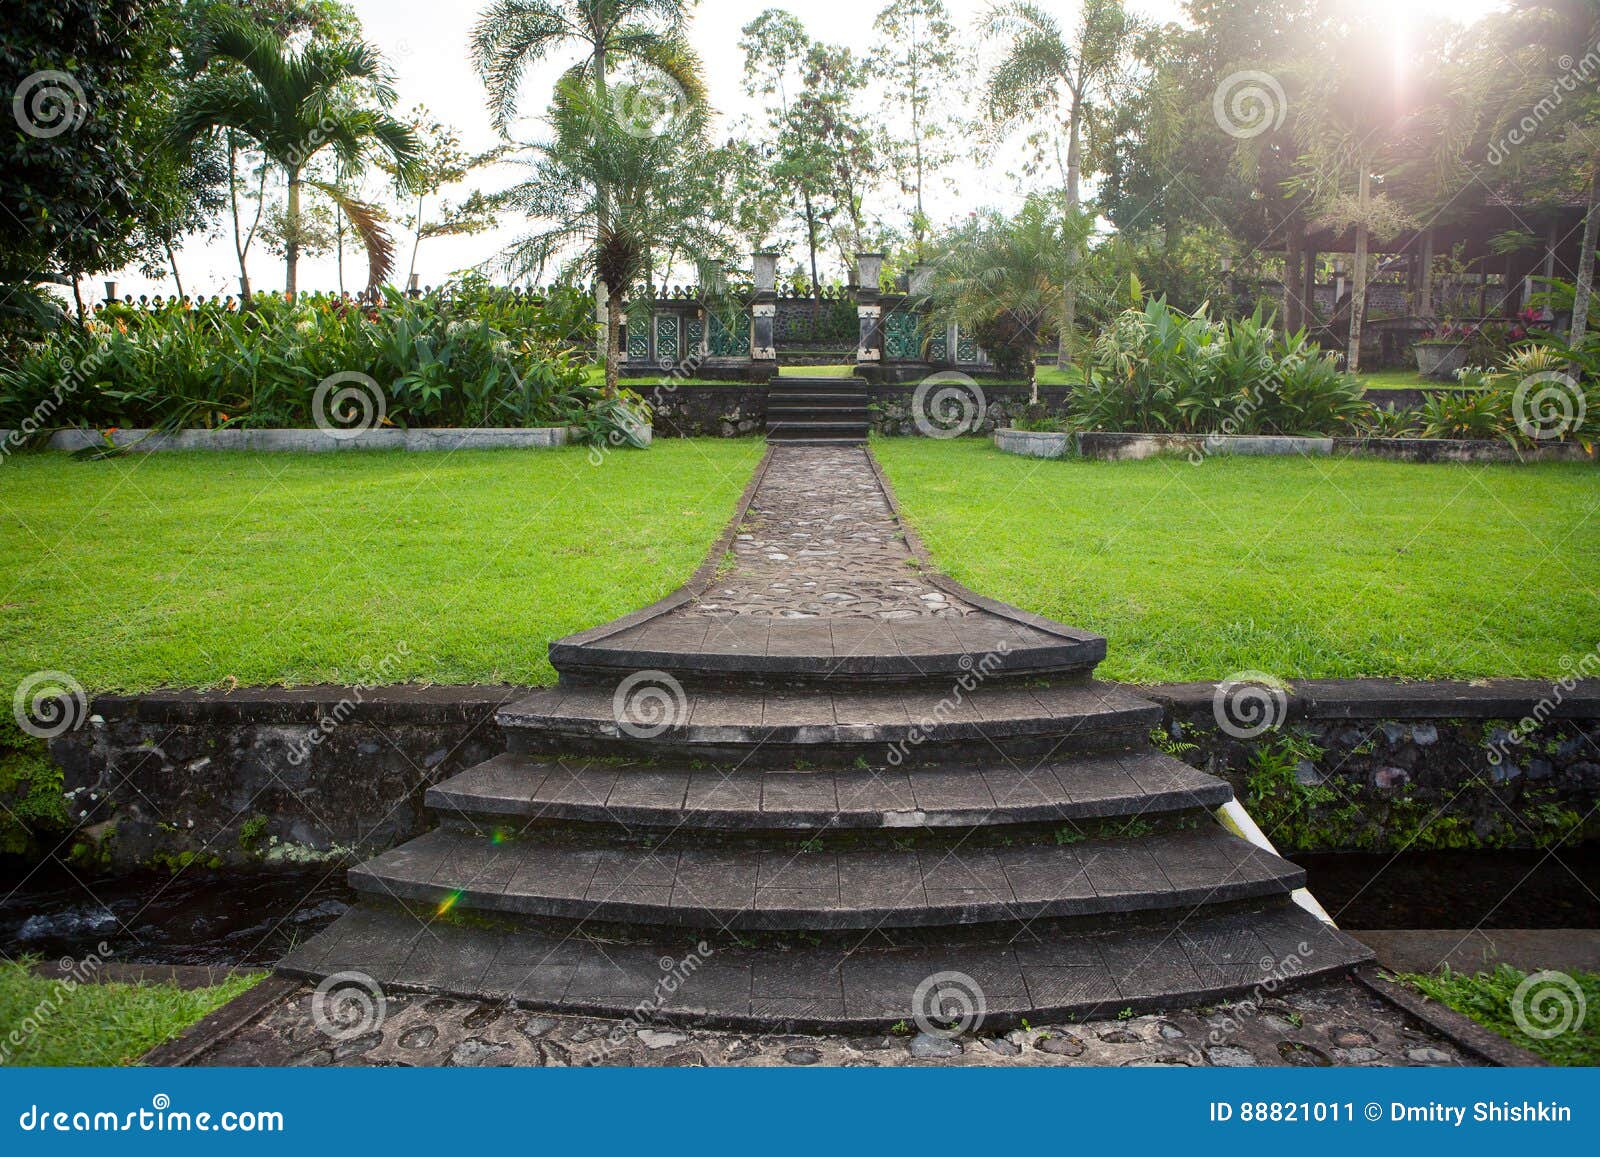 Trayectoria Y Escaleras De Piedra En Un Parque Tropical Imagen De Archivo Imagen De Parque Trayectoria 88821011